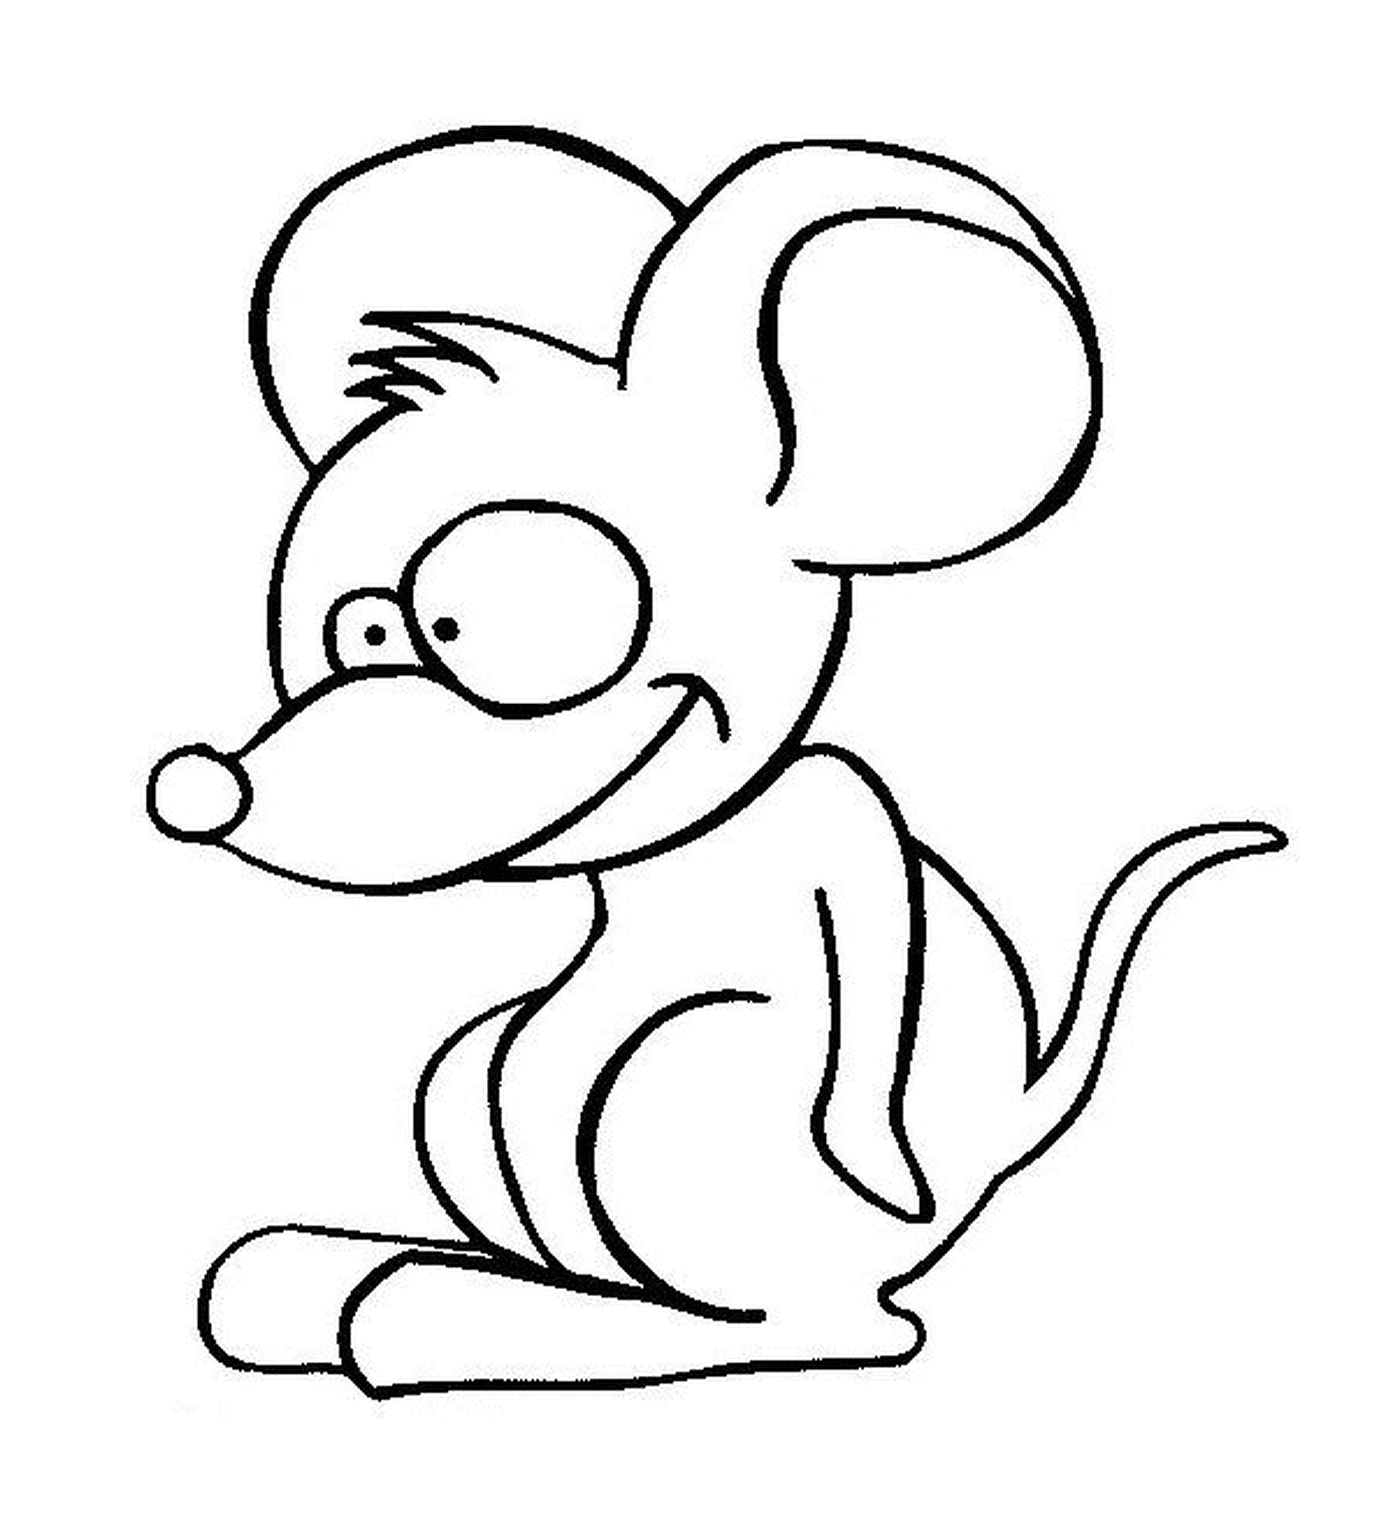  Um rato com uma cabeça grande 